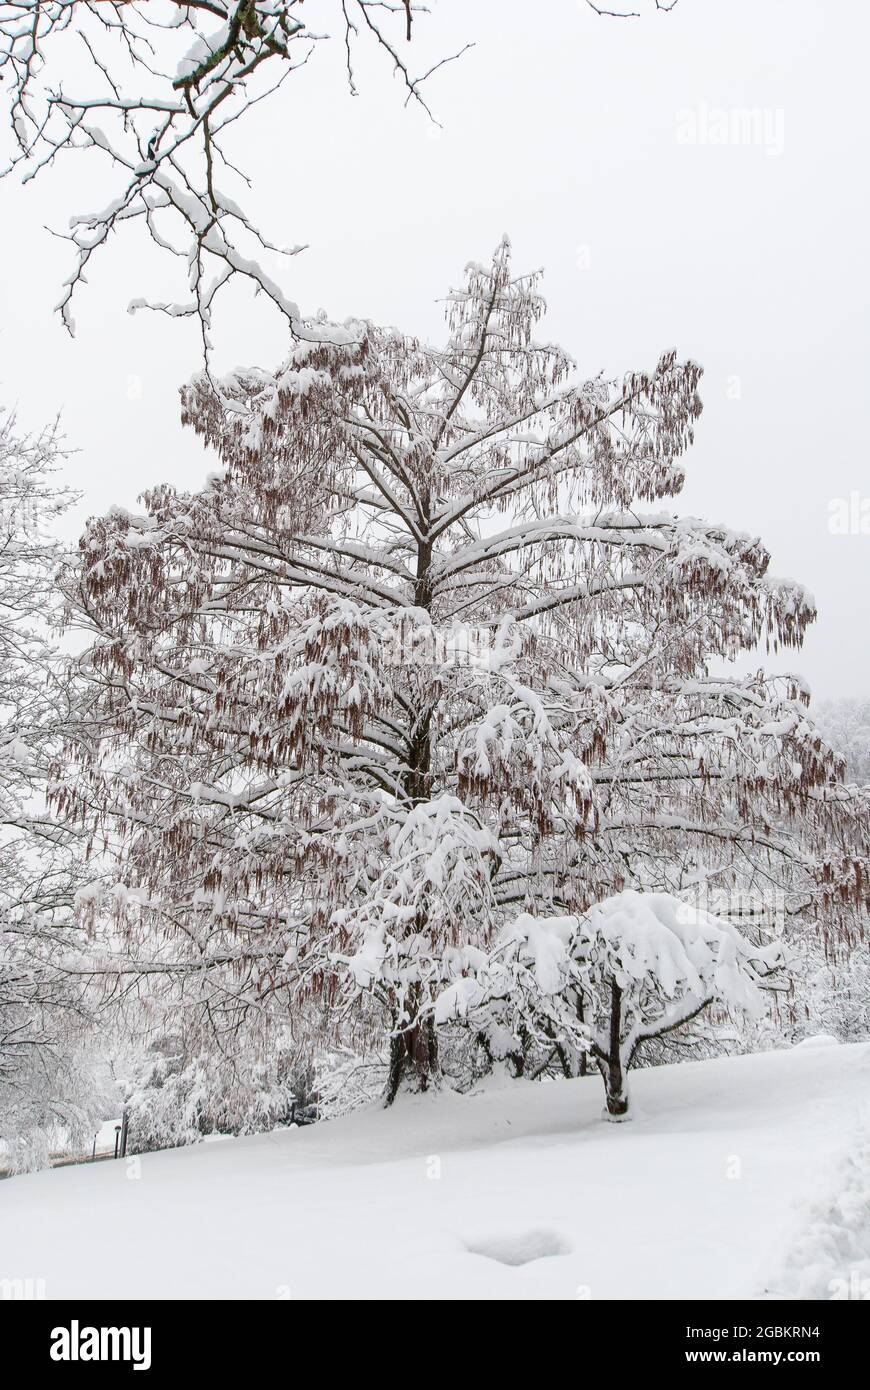 Schneebedeckter Baum in einem schneebedeckten Park bei trostloses Wetter. Stockfoto